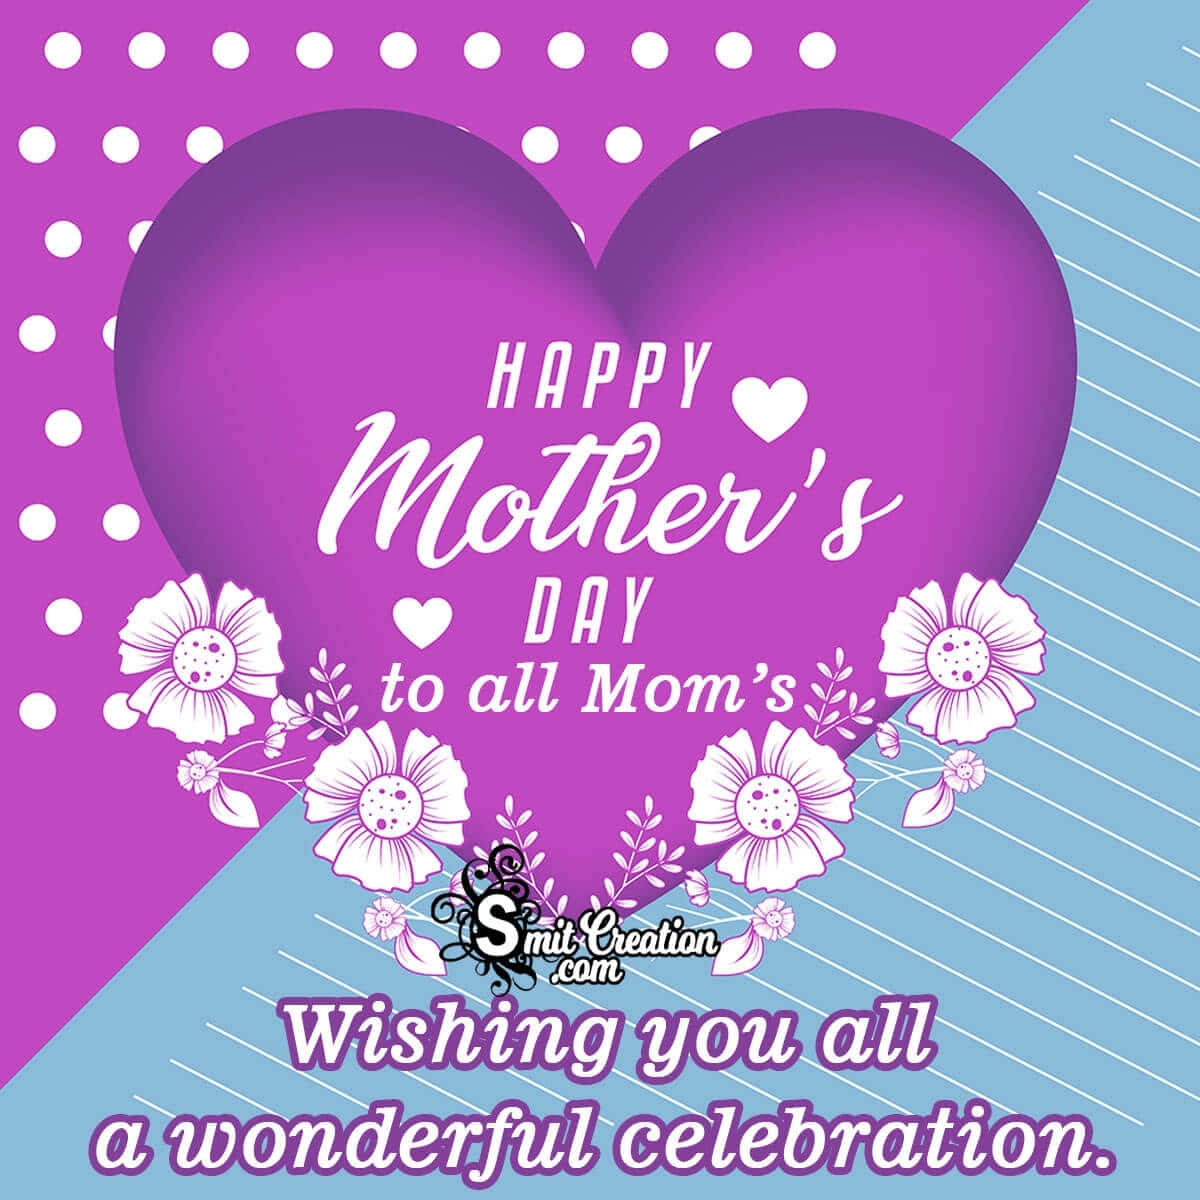 Glædelig Mors Dag! Fejr kærligheden og det specielle bånd, som eksisterer mellem mødre og børn.